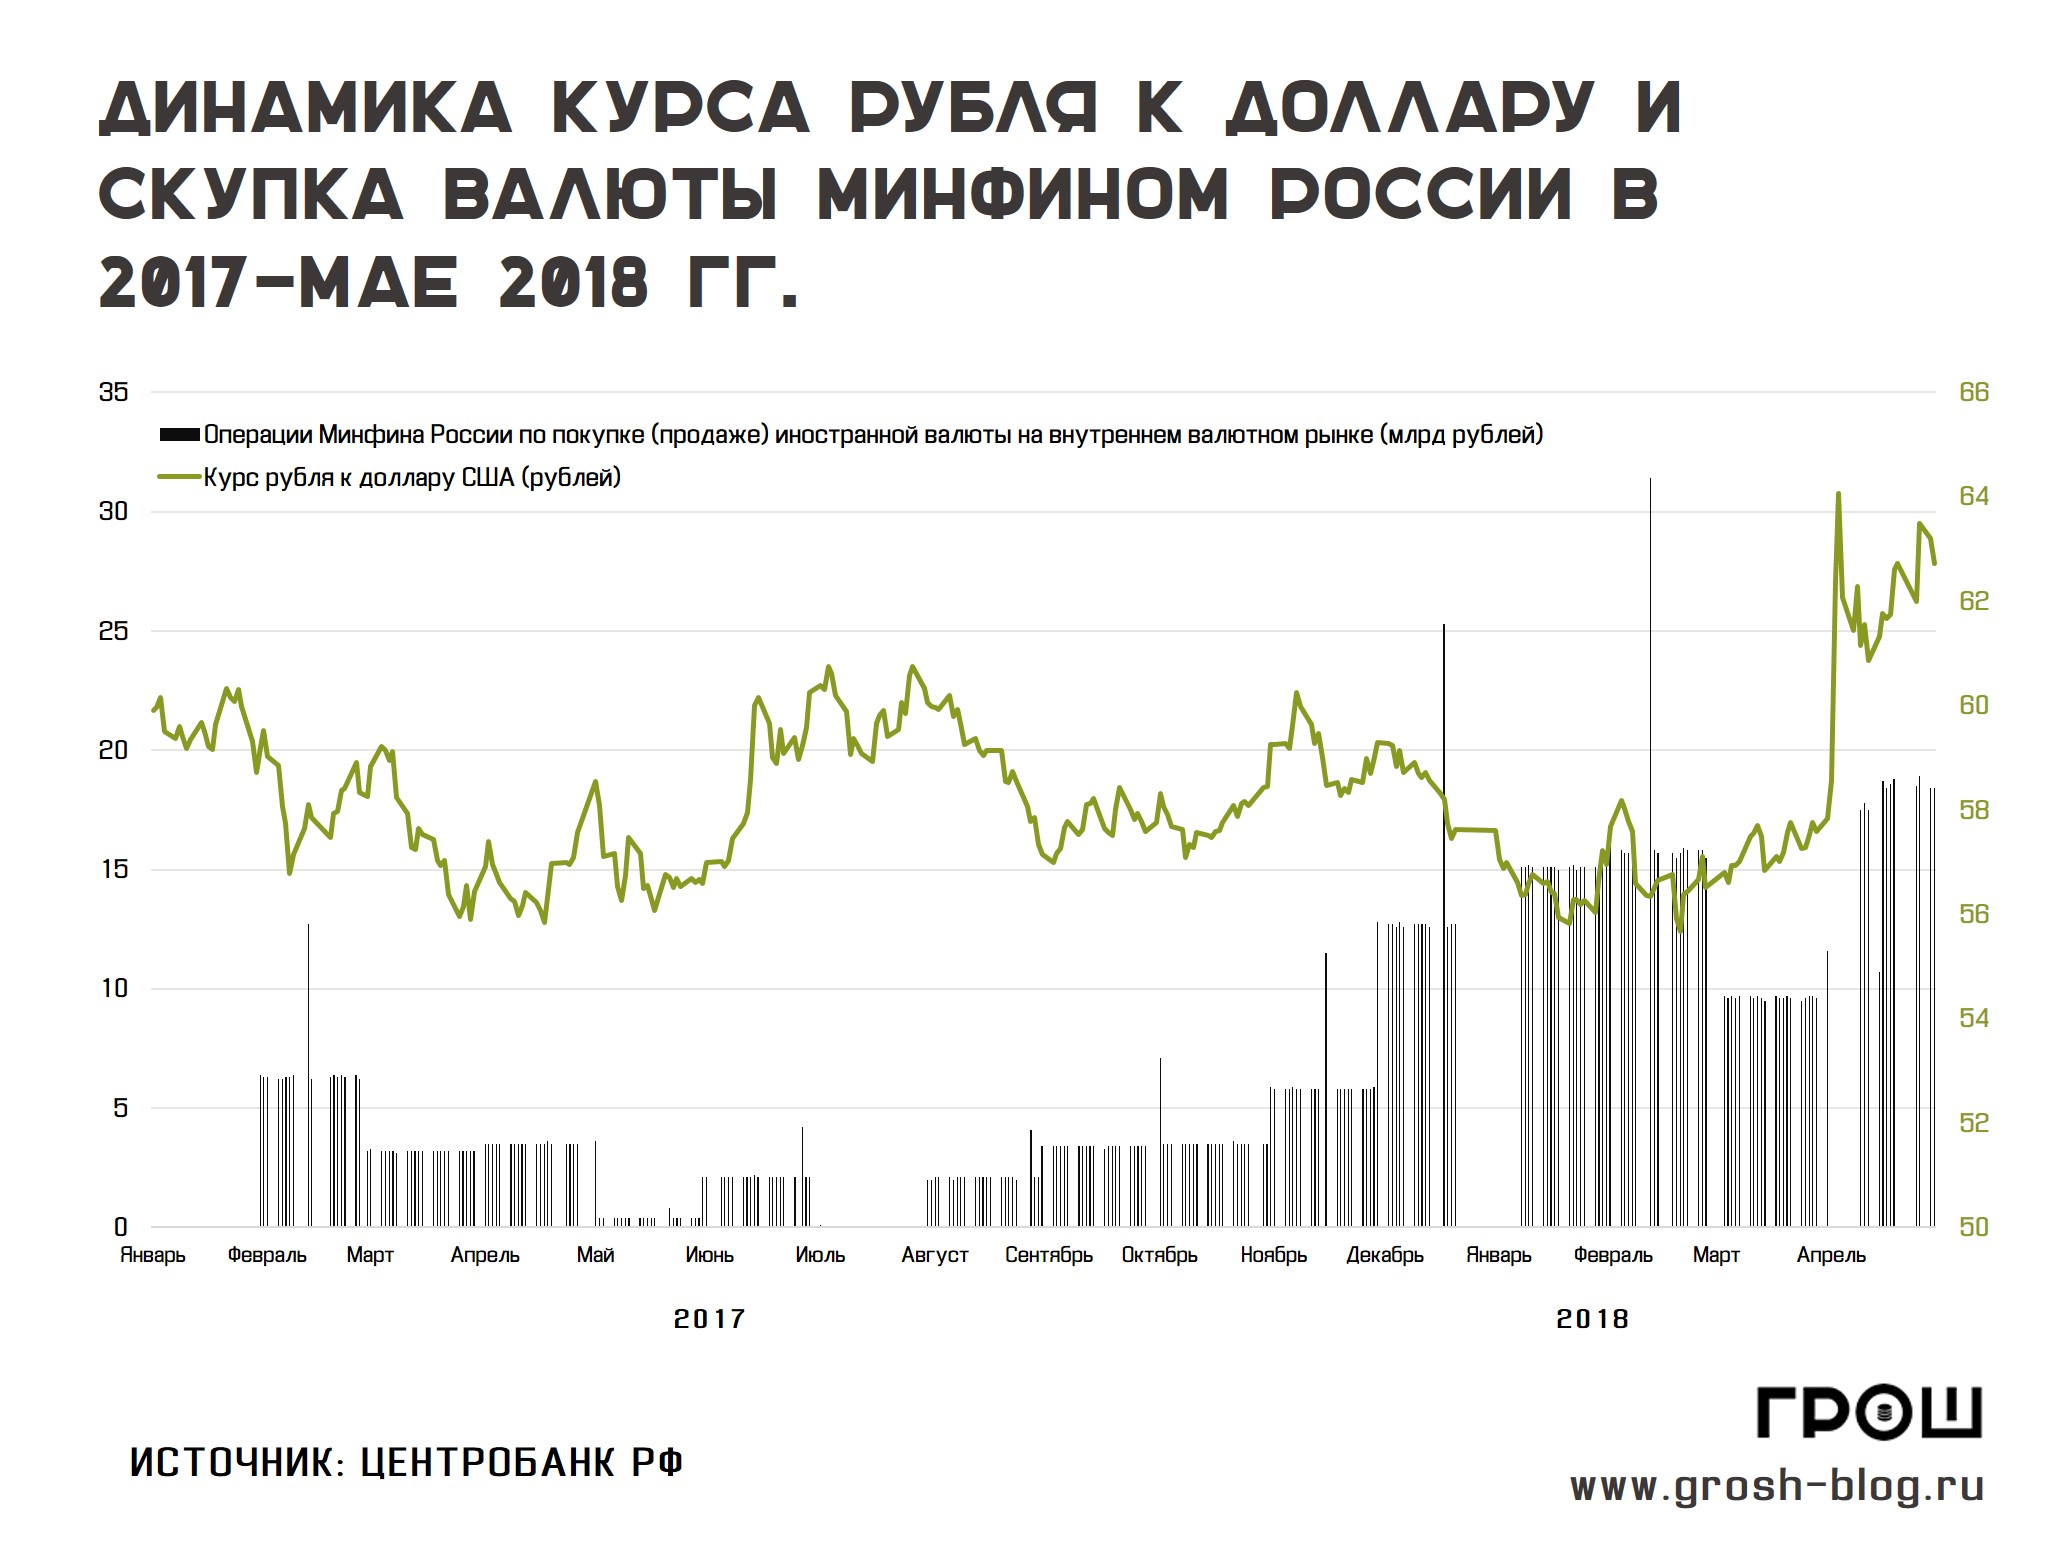 покупка валюты минфином рф https://grosh-blog.ru